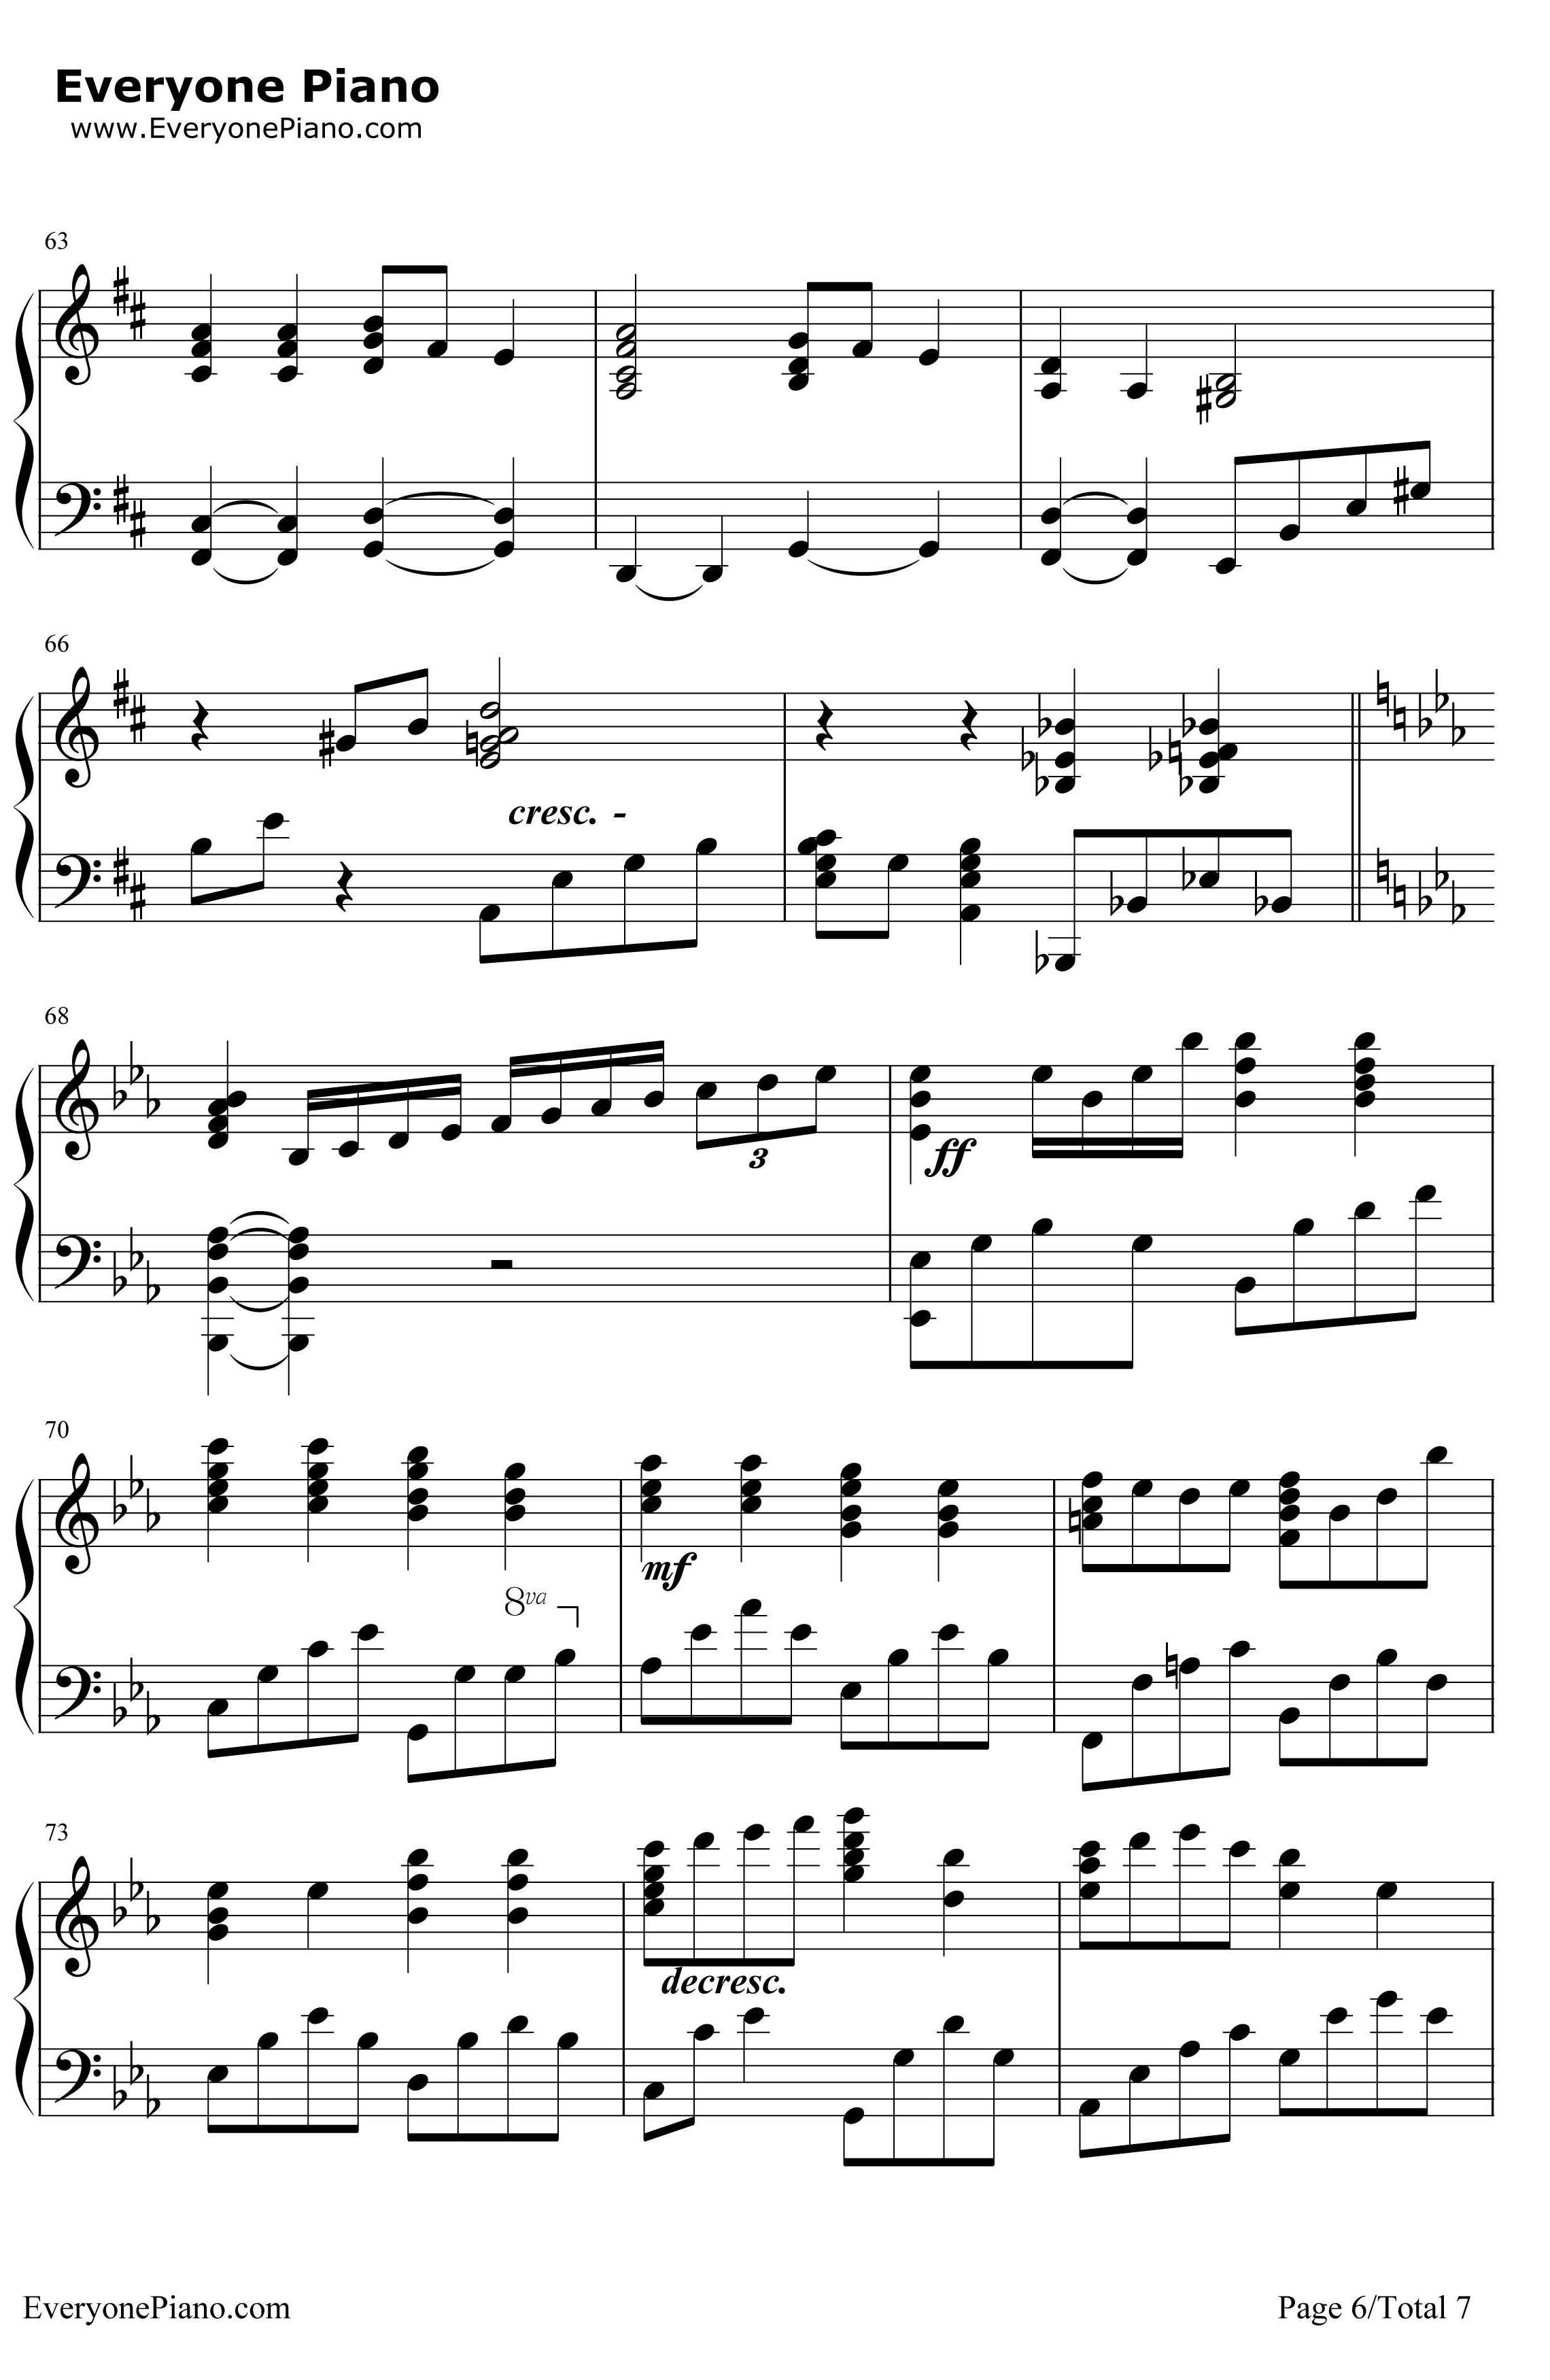 小星星幻想曲钢琴谱-V.K克6